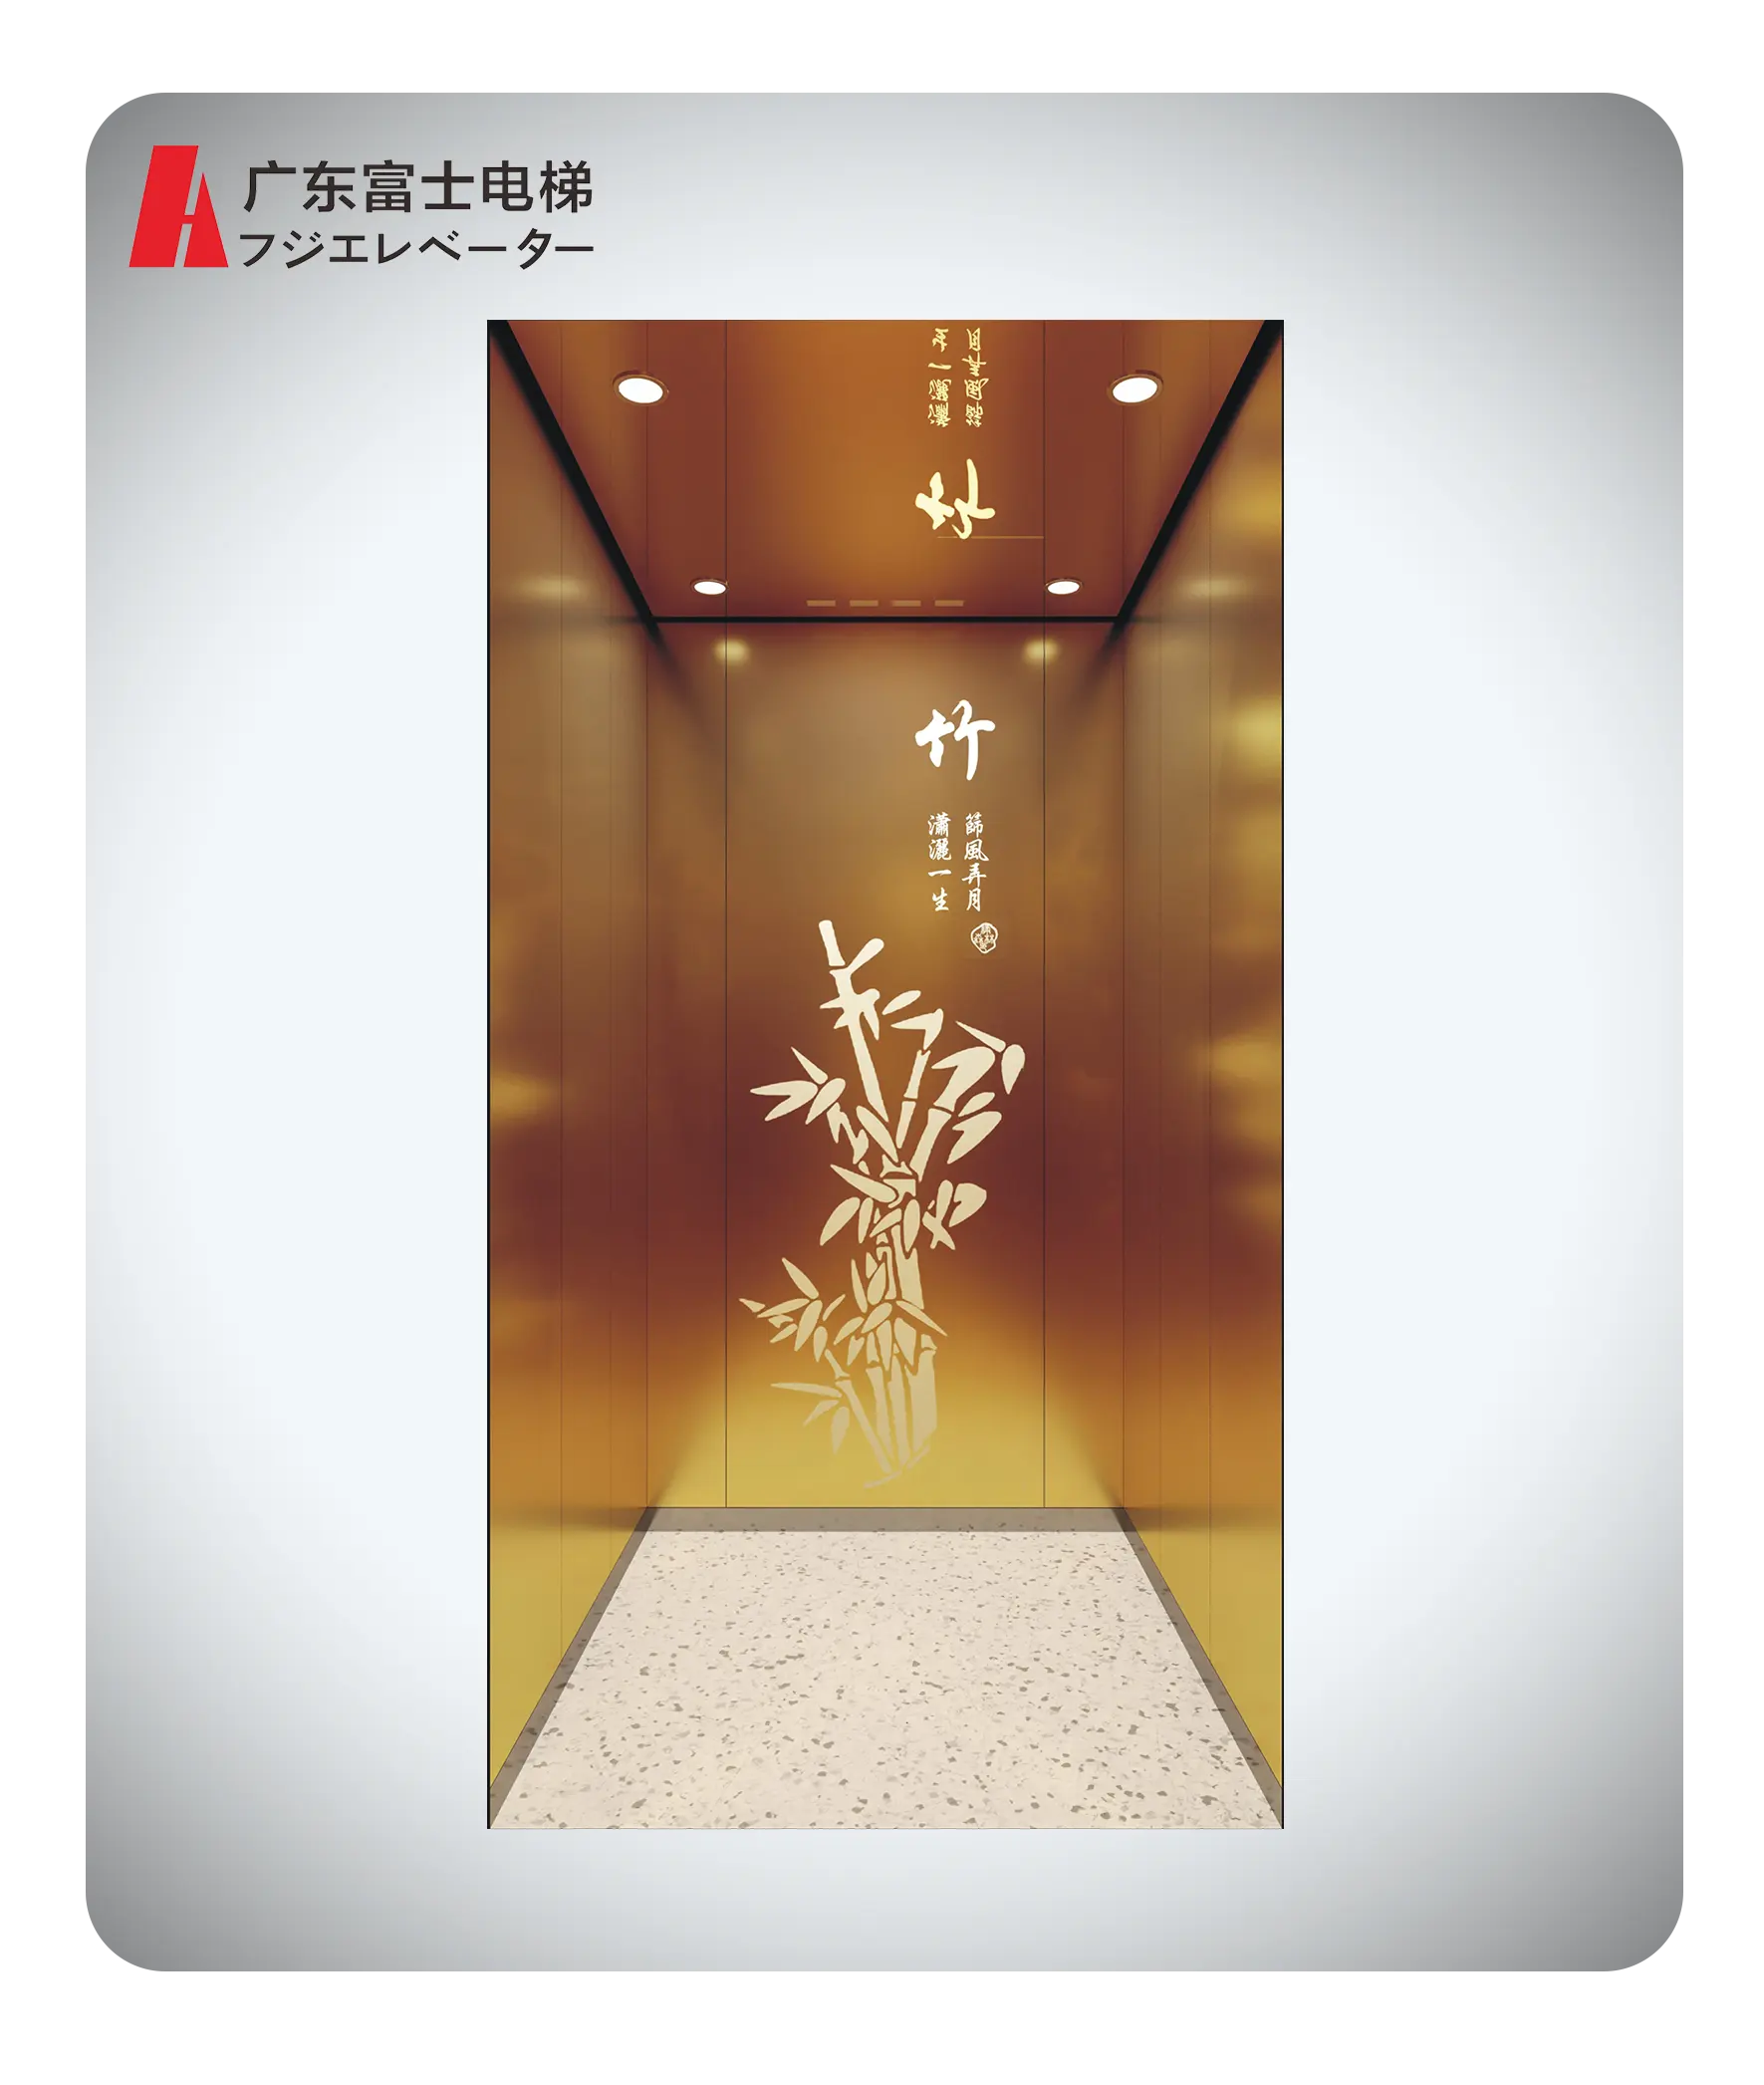 Commercial Passenger Elevator Stainless Steel Small Lift Passenger Elevator